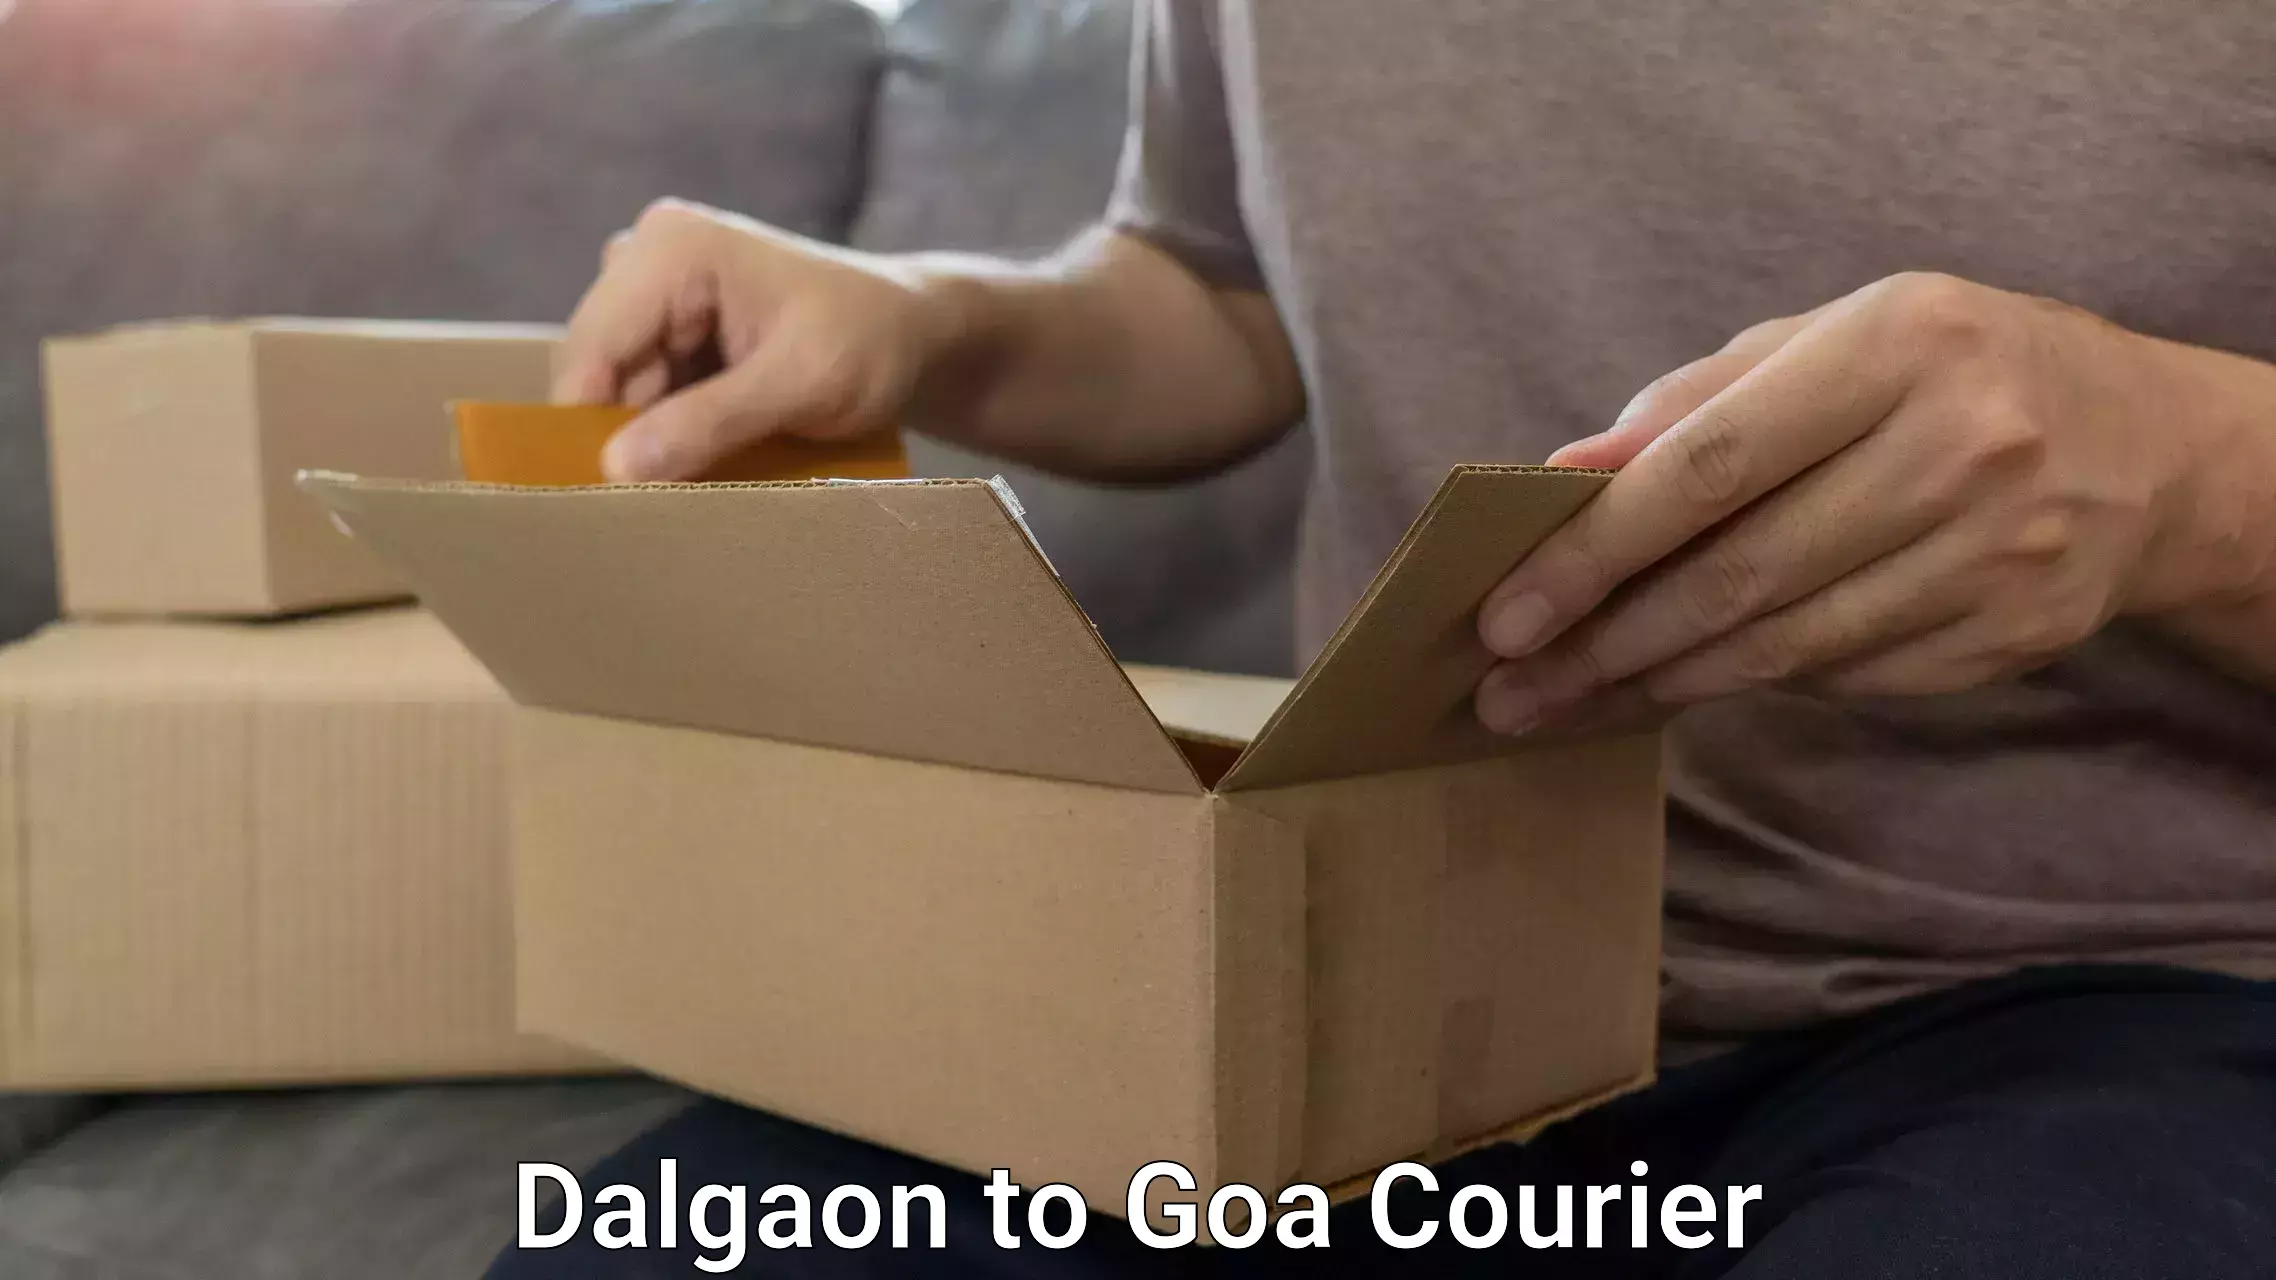 Electronic items luggage shipping Dalgaon to Goa